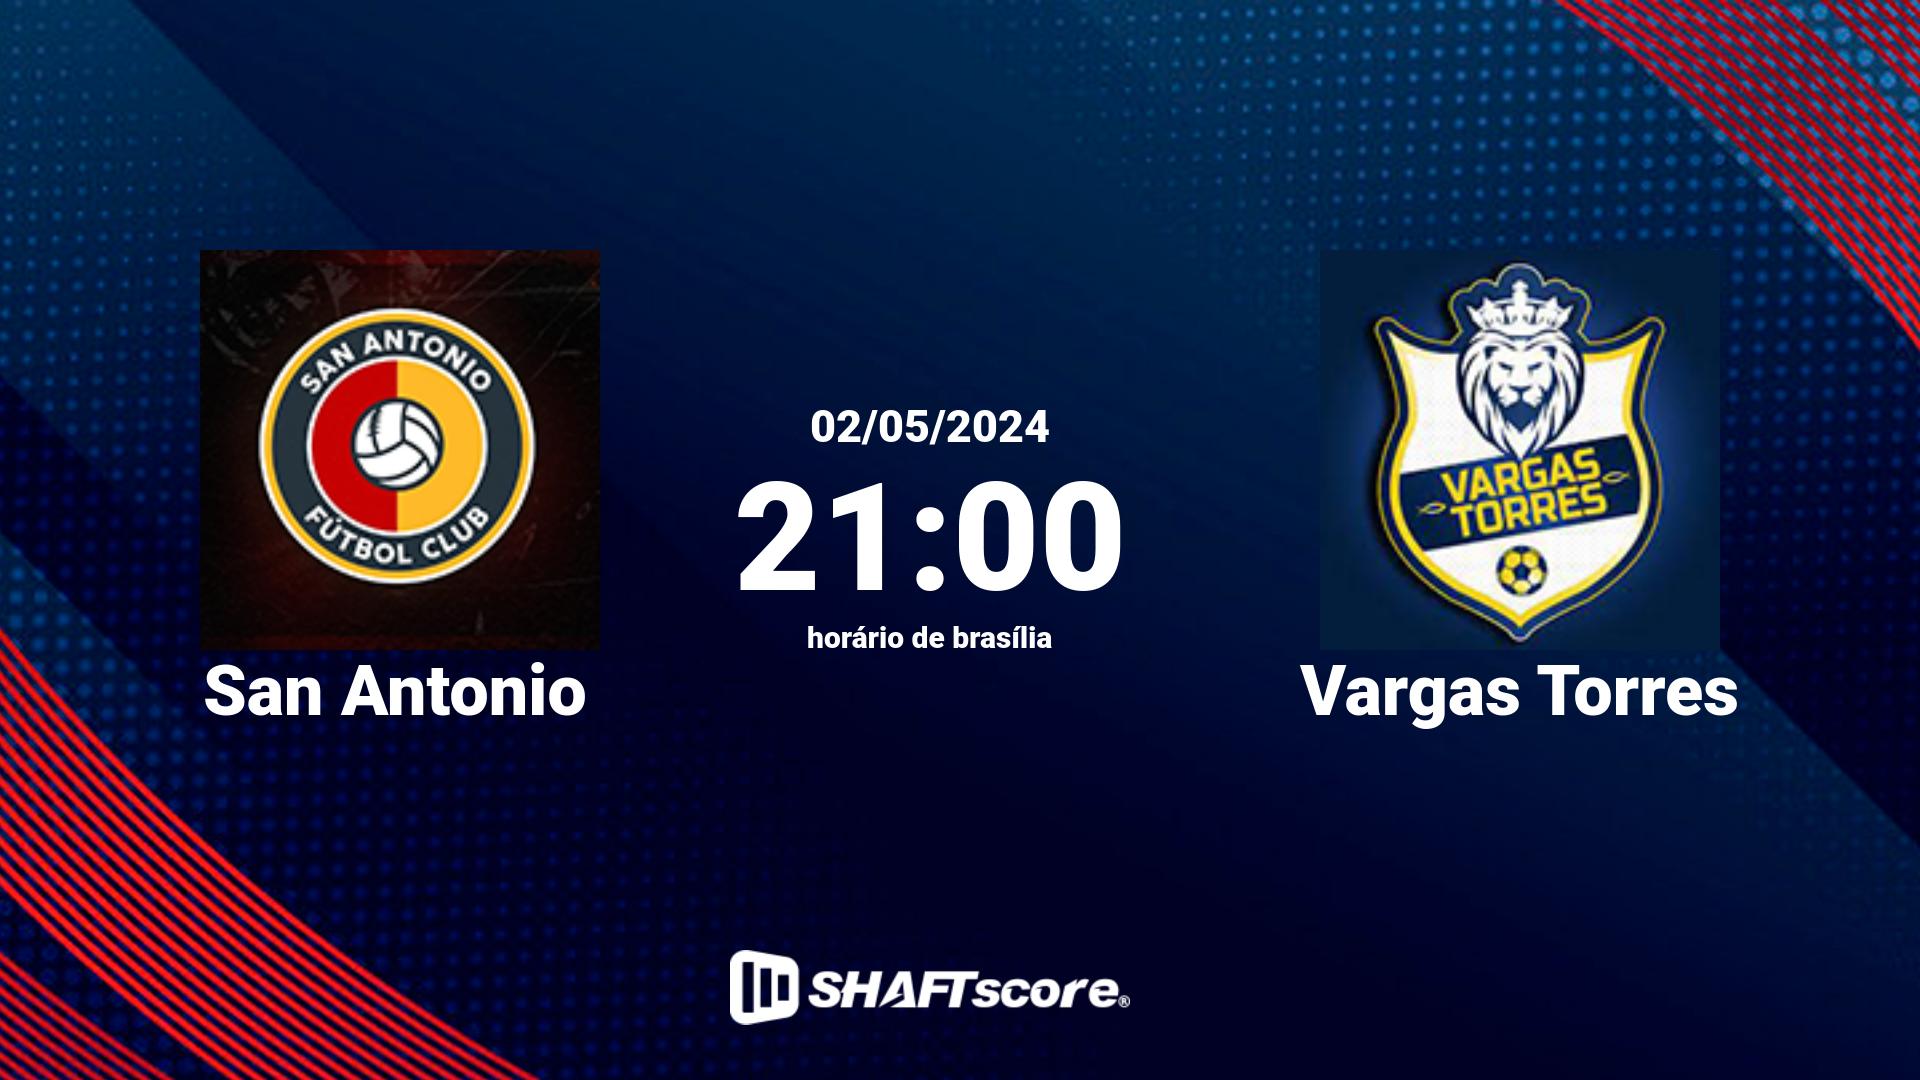 Estatísticas do jogo San Antonio vs Vargas Torres 02.05 21:00